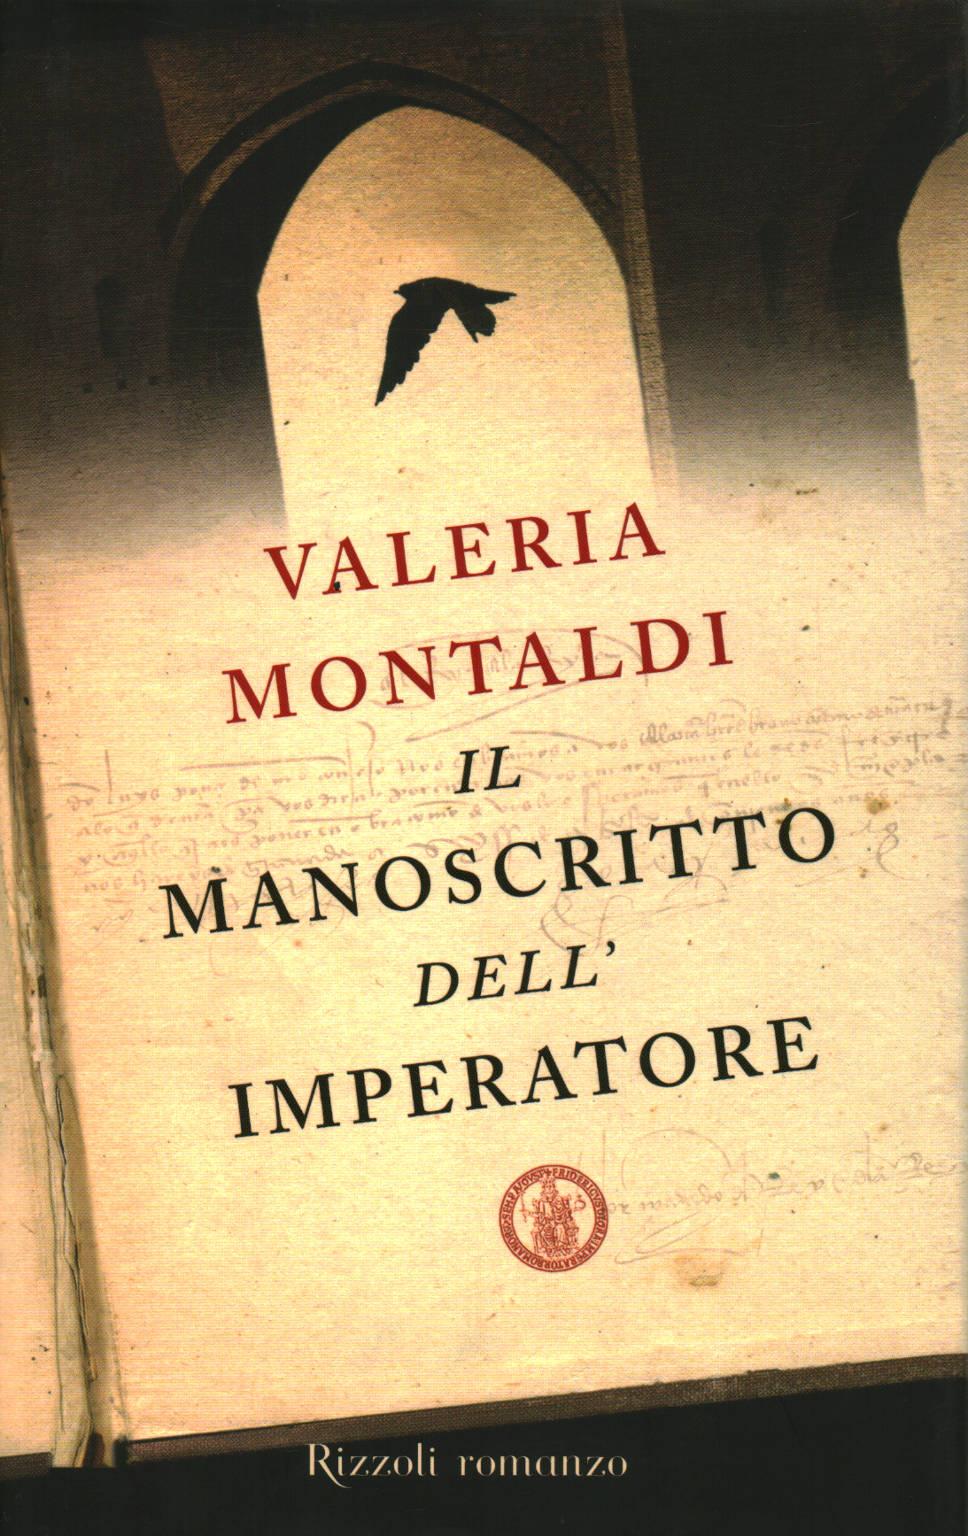 The emperor's manuscript, Valeria Montaldi